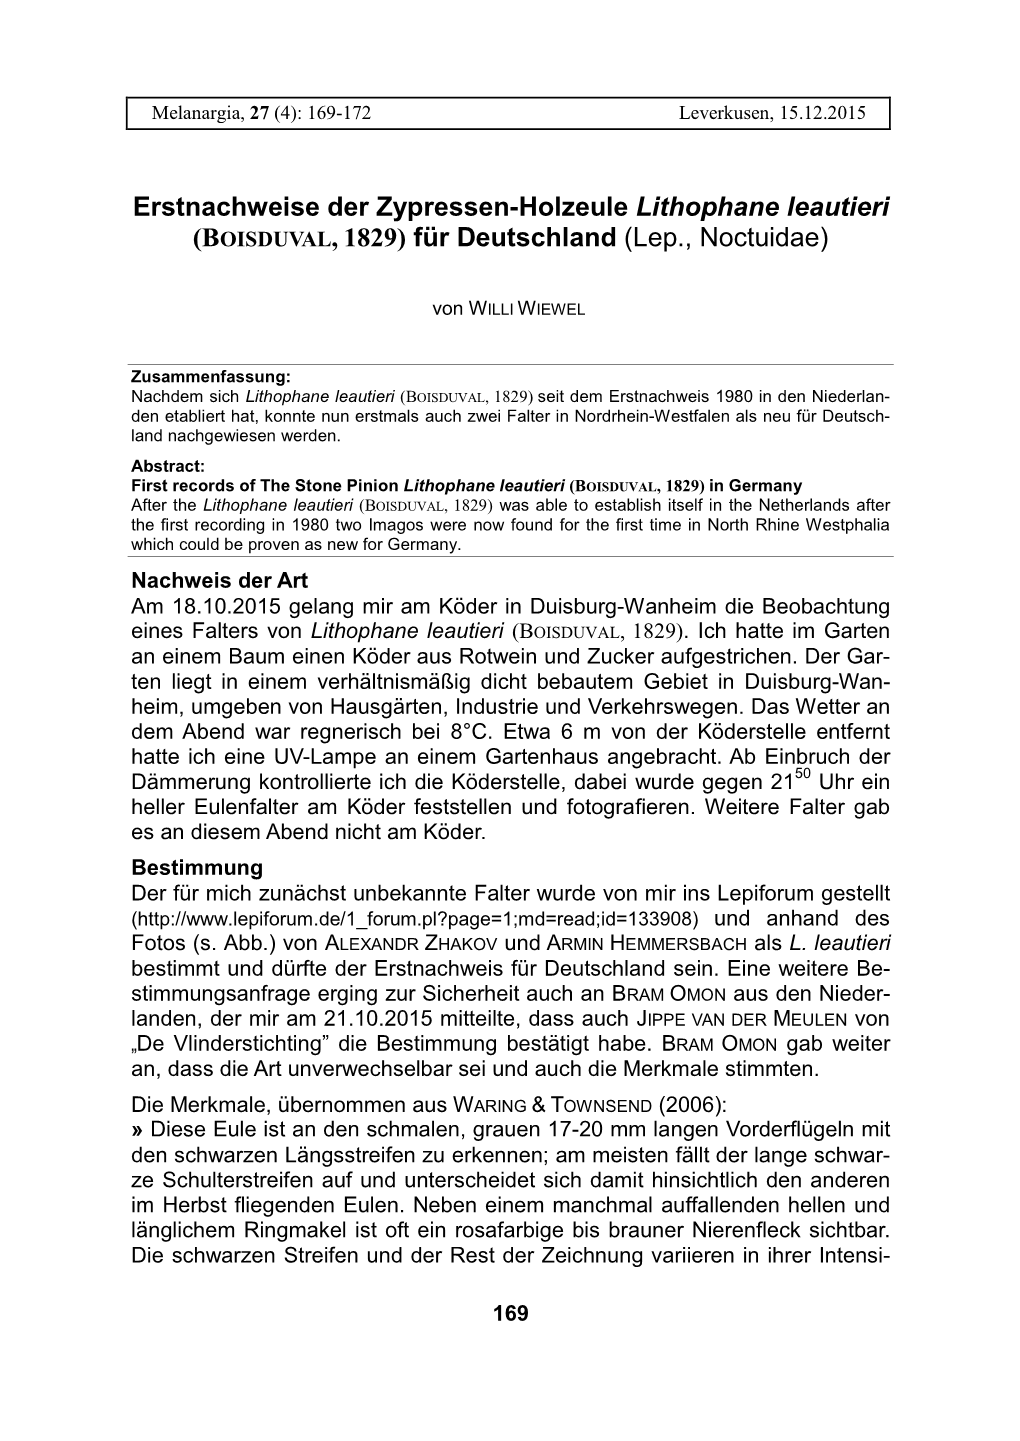 Erstnachweise Der Zypressen-Holzeule Lithophane Leautieri (BOISDUVAL, 1829) Für Deutschland (Lep., Noctuidae)